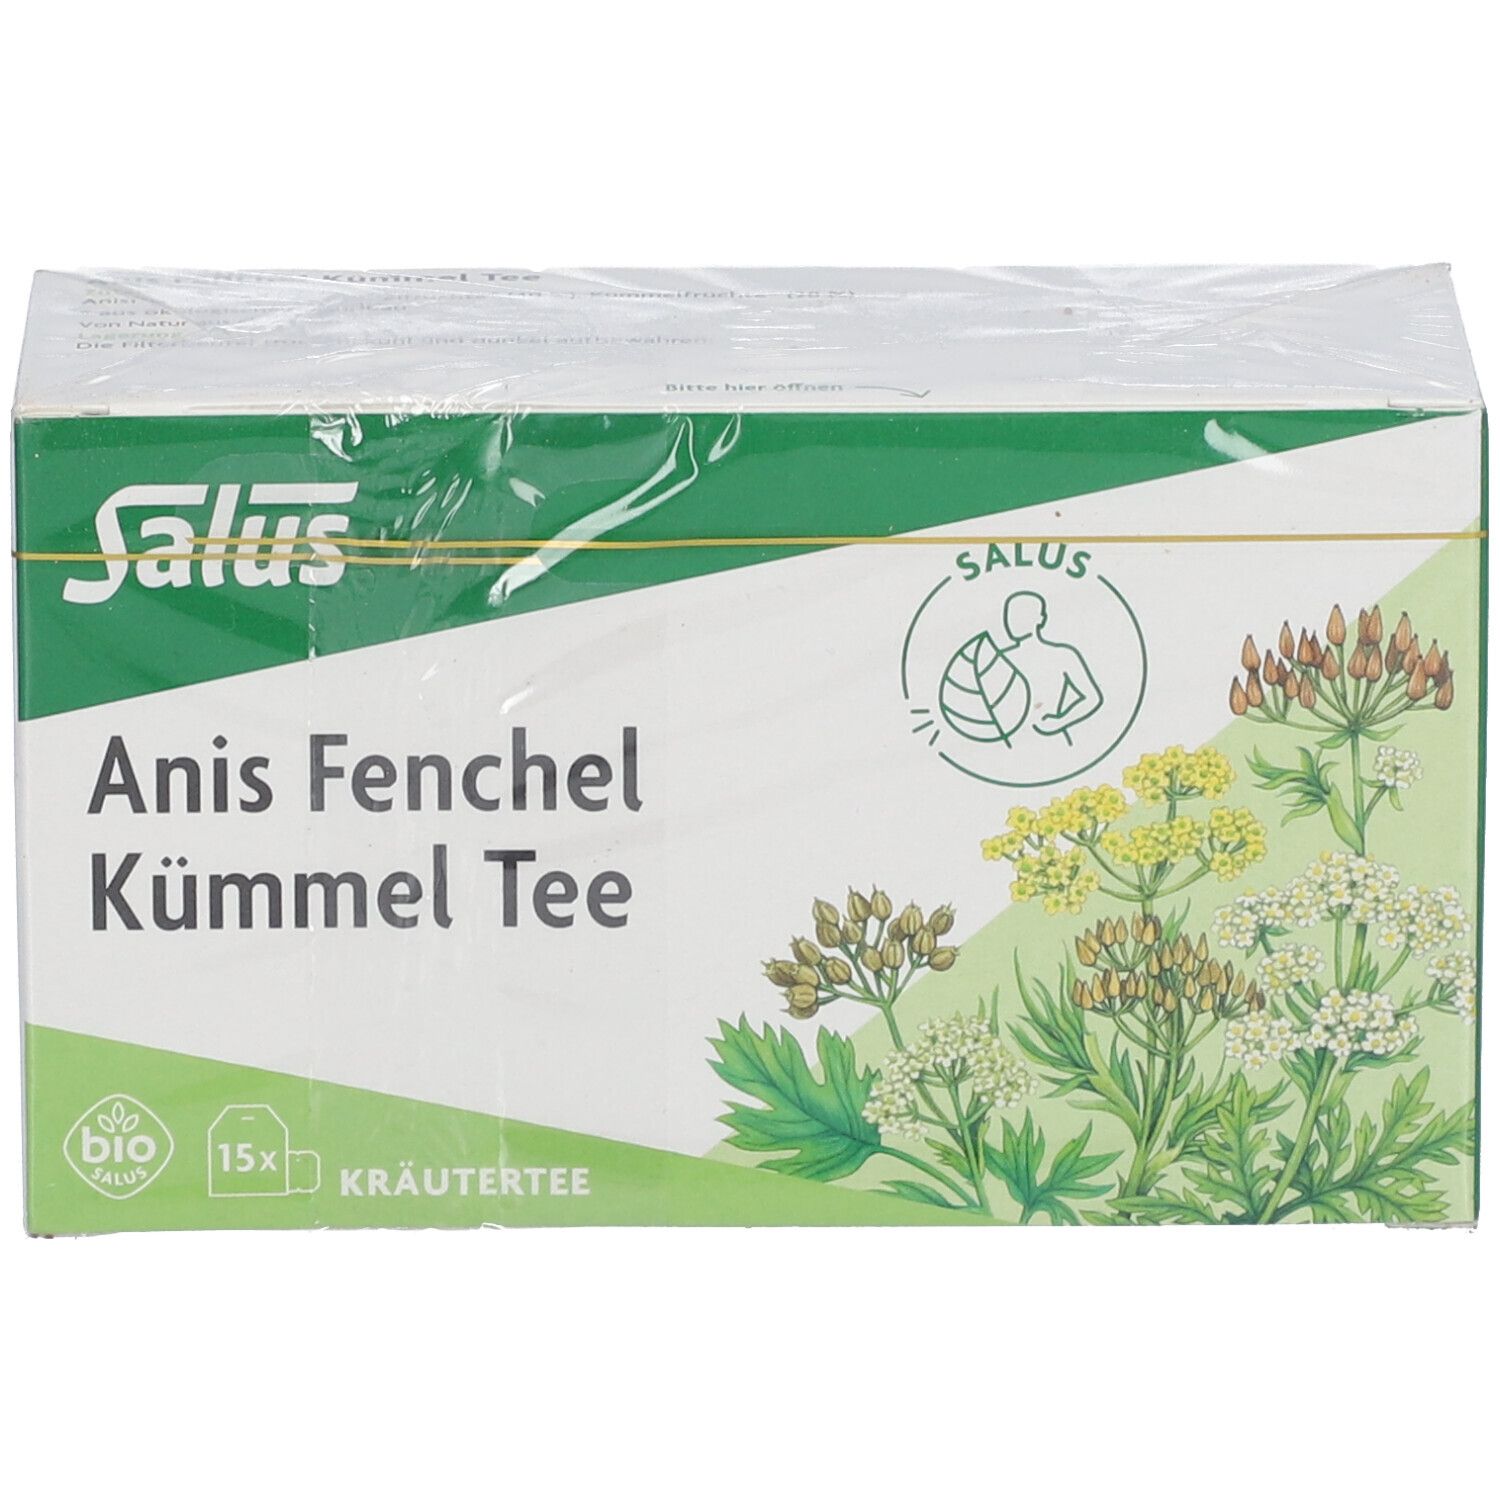 Salus® Anis Fenchel Kümmel Tee